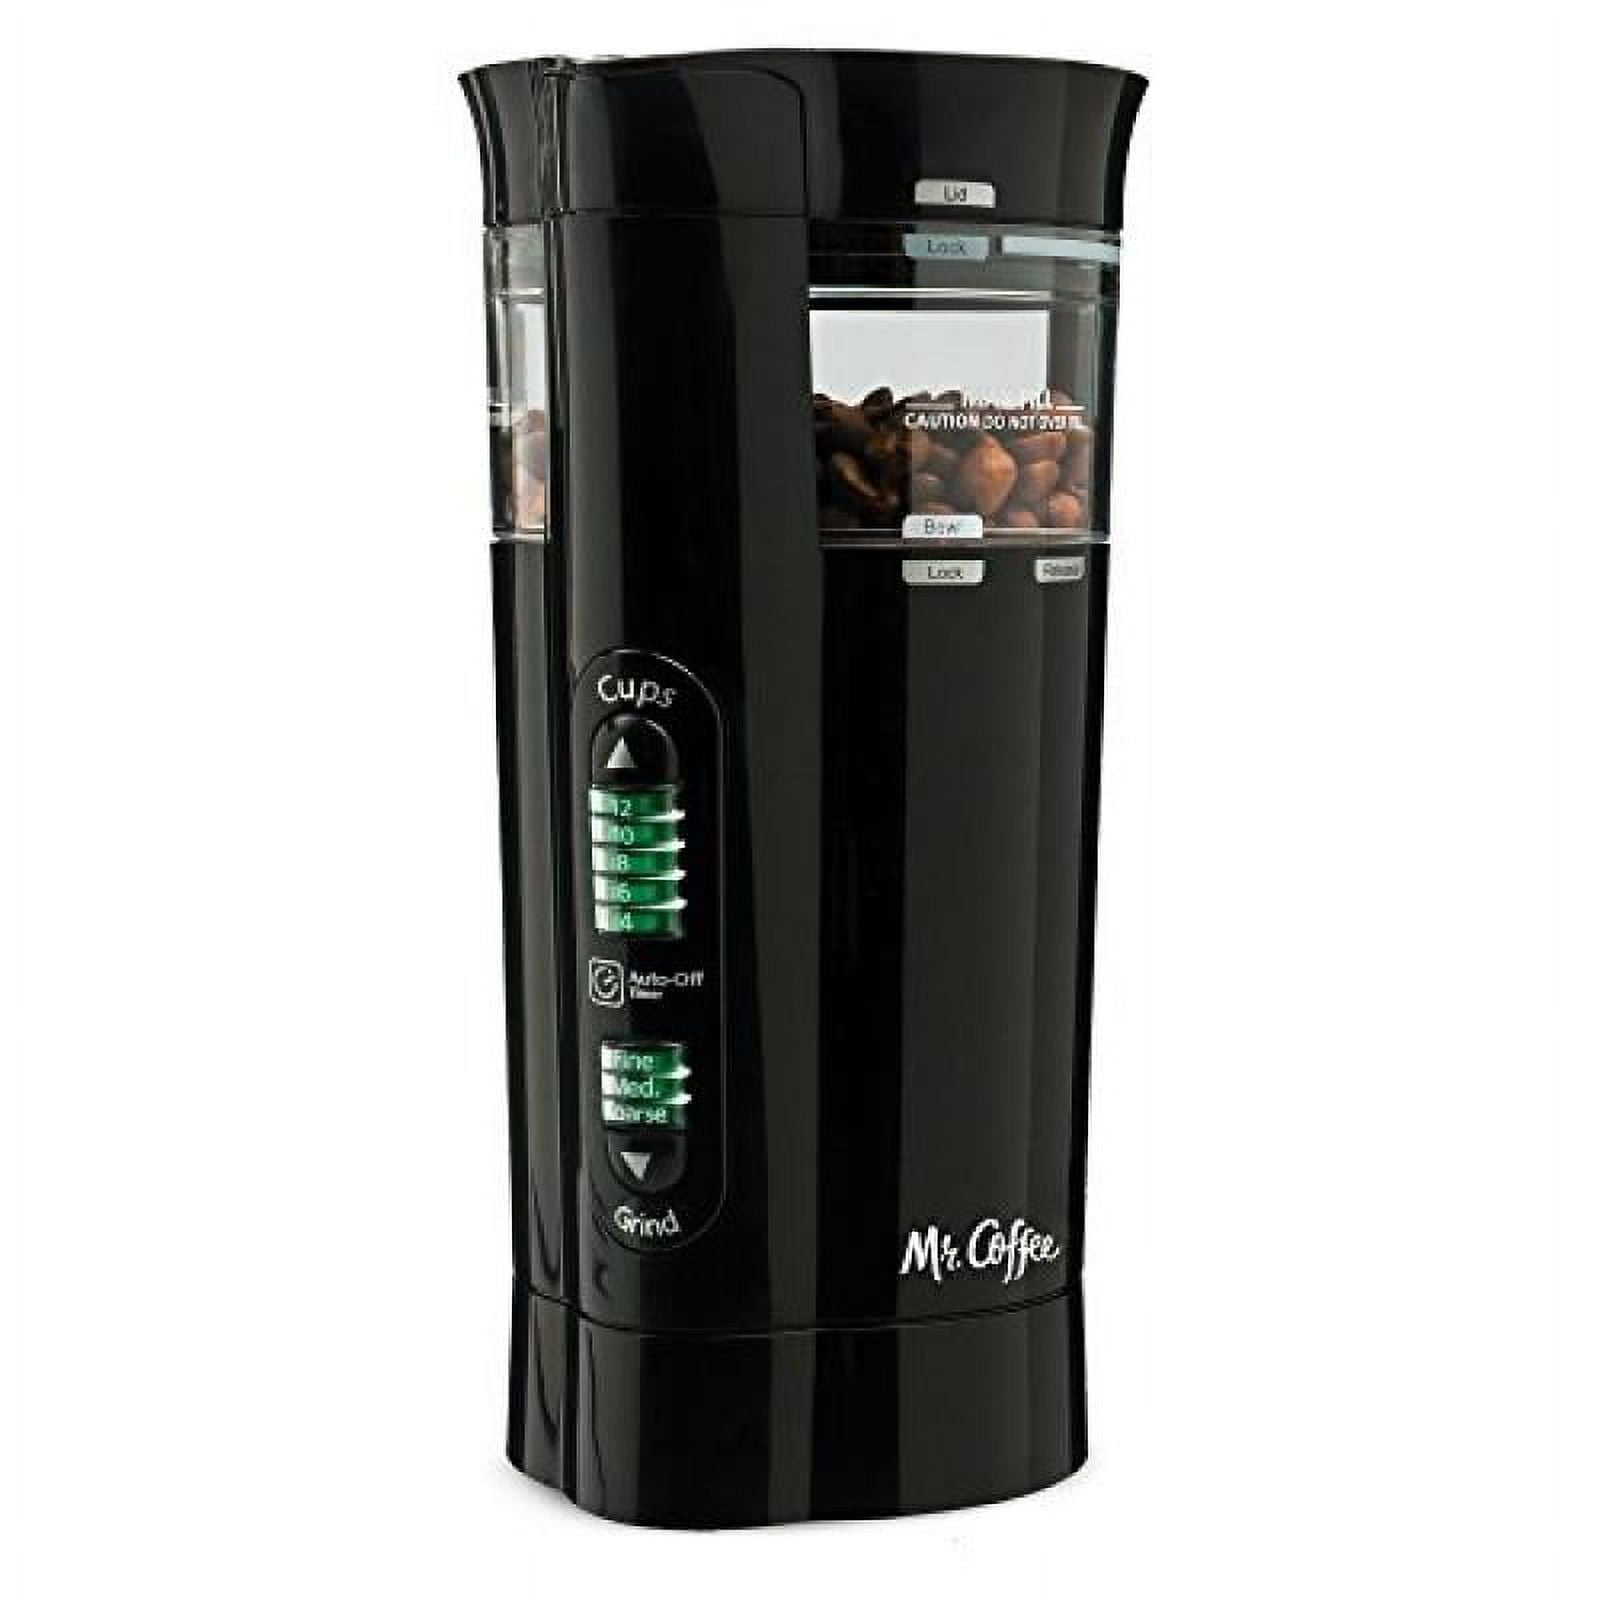 Mr. Coffee Multi-Grind 12-Cup Automatic Coffee Grinder Black BVMC-PBG77 -  Best Buy